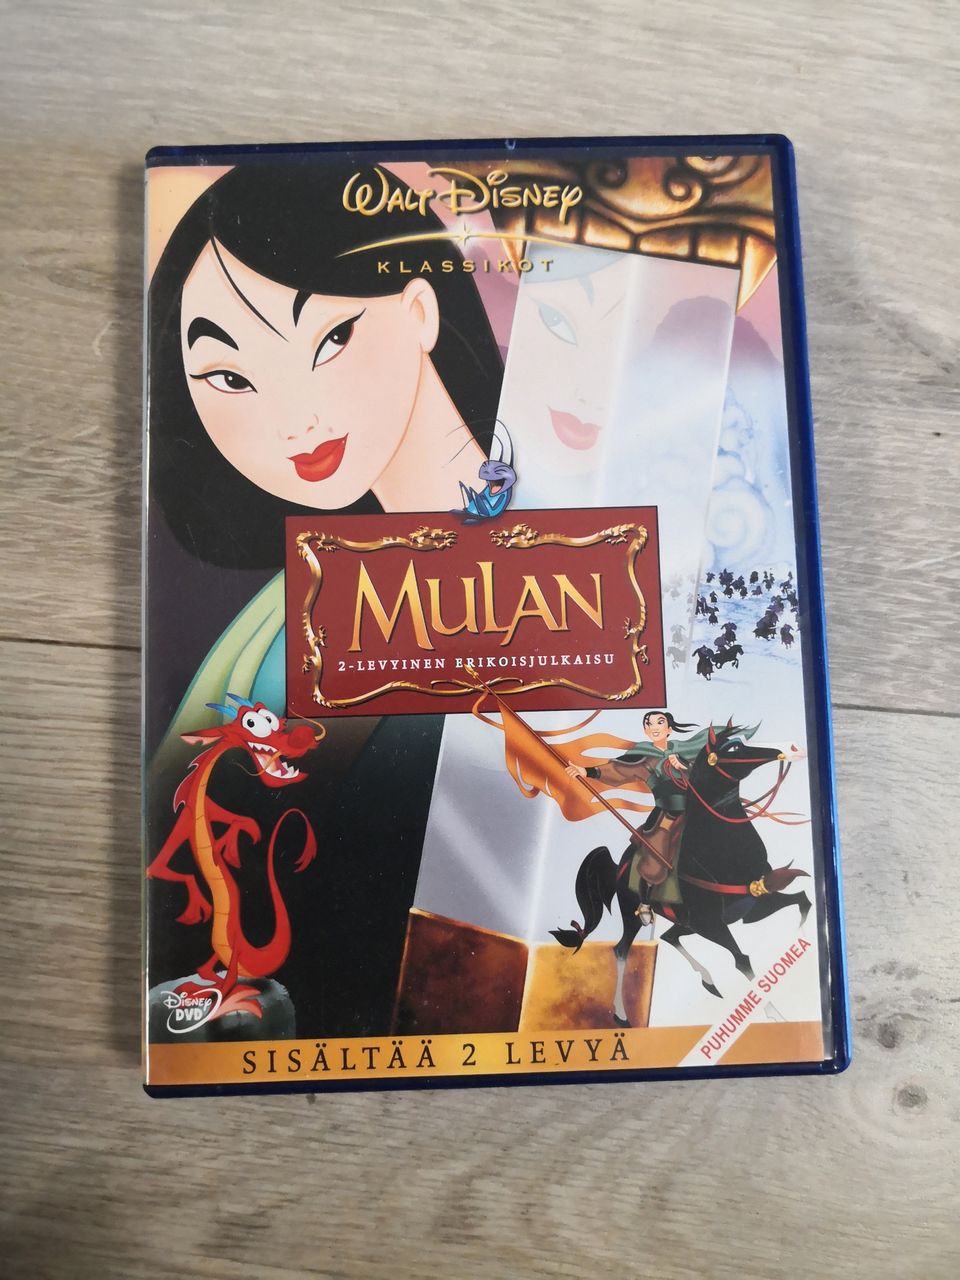 Disneyn Mulan 2-levyinen erikoisjulkaisu DVD